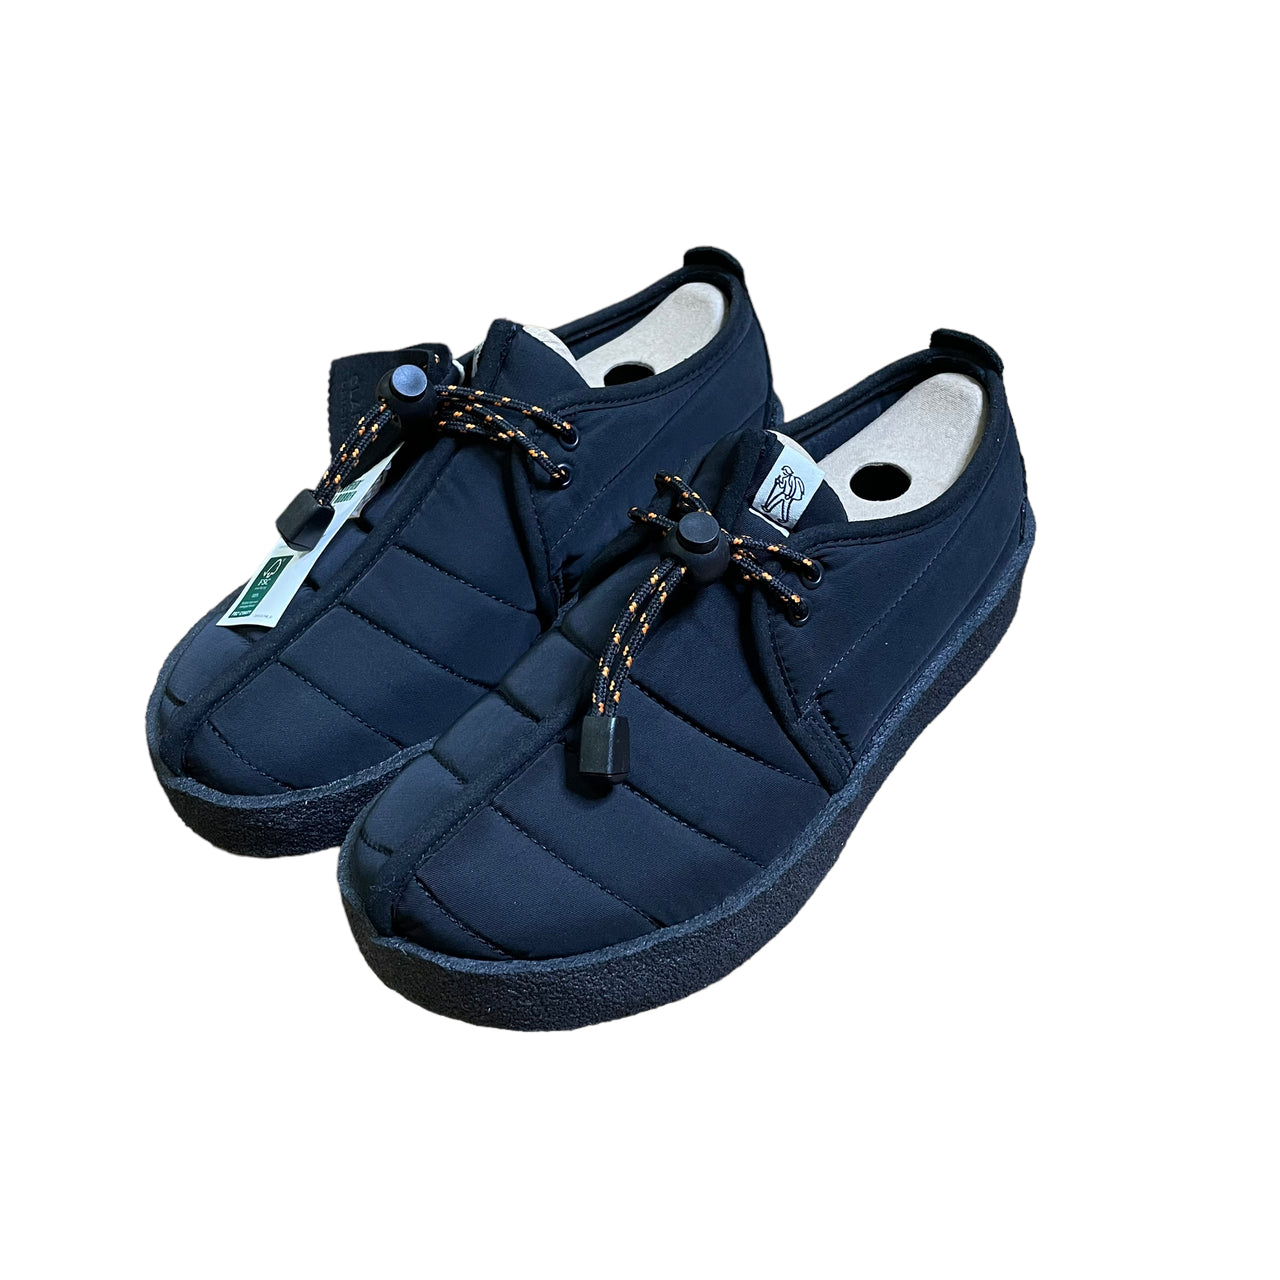 Clark’s Quilted Desert Trek Shoes (8.0)